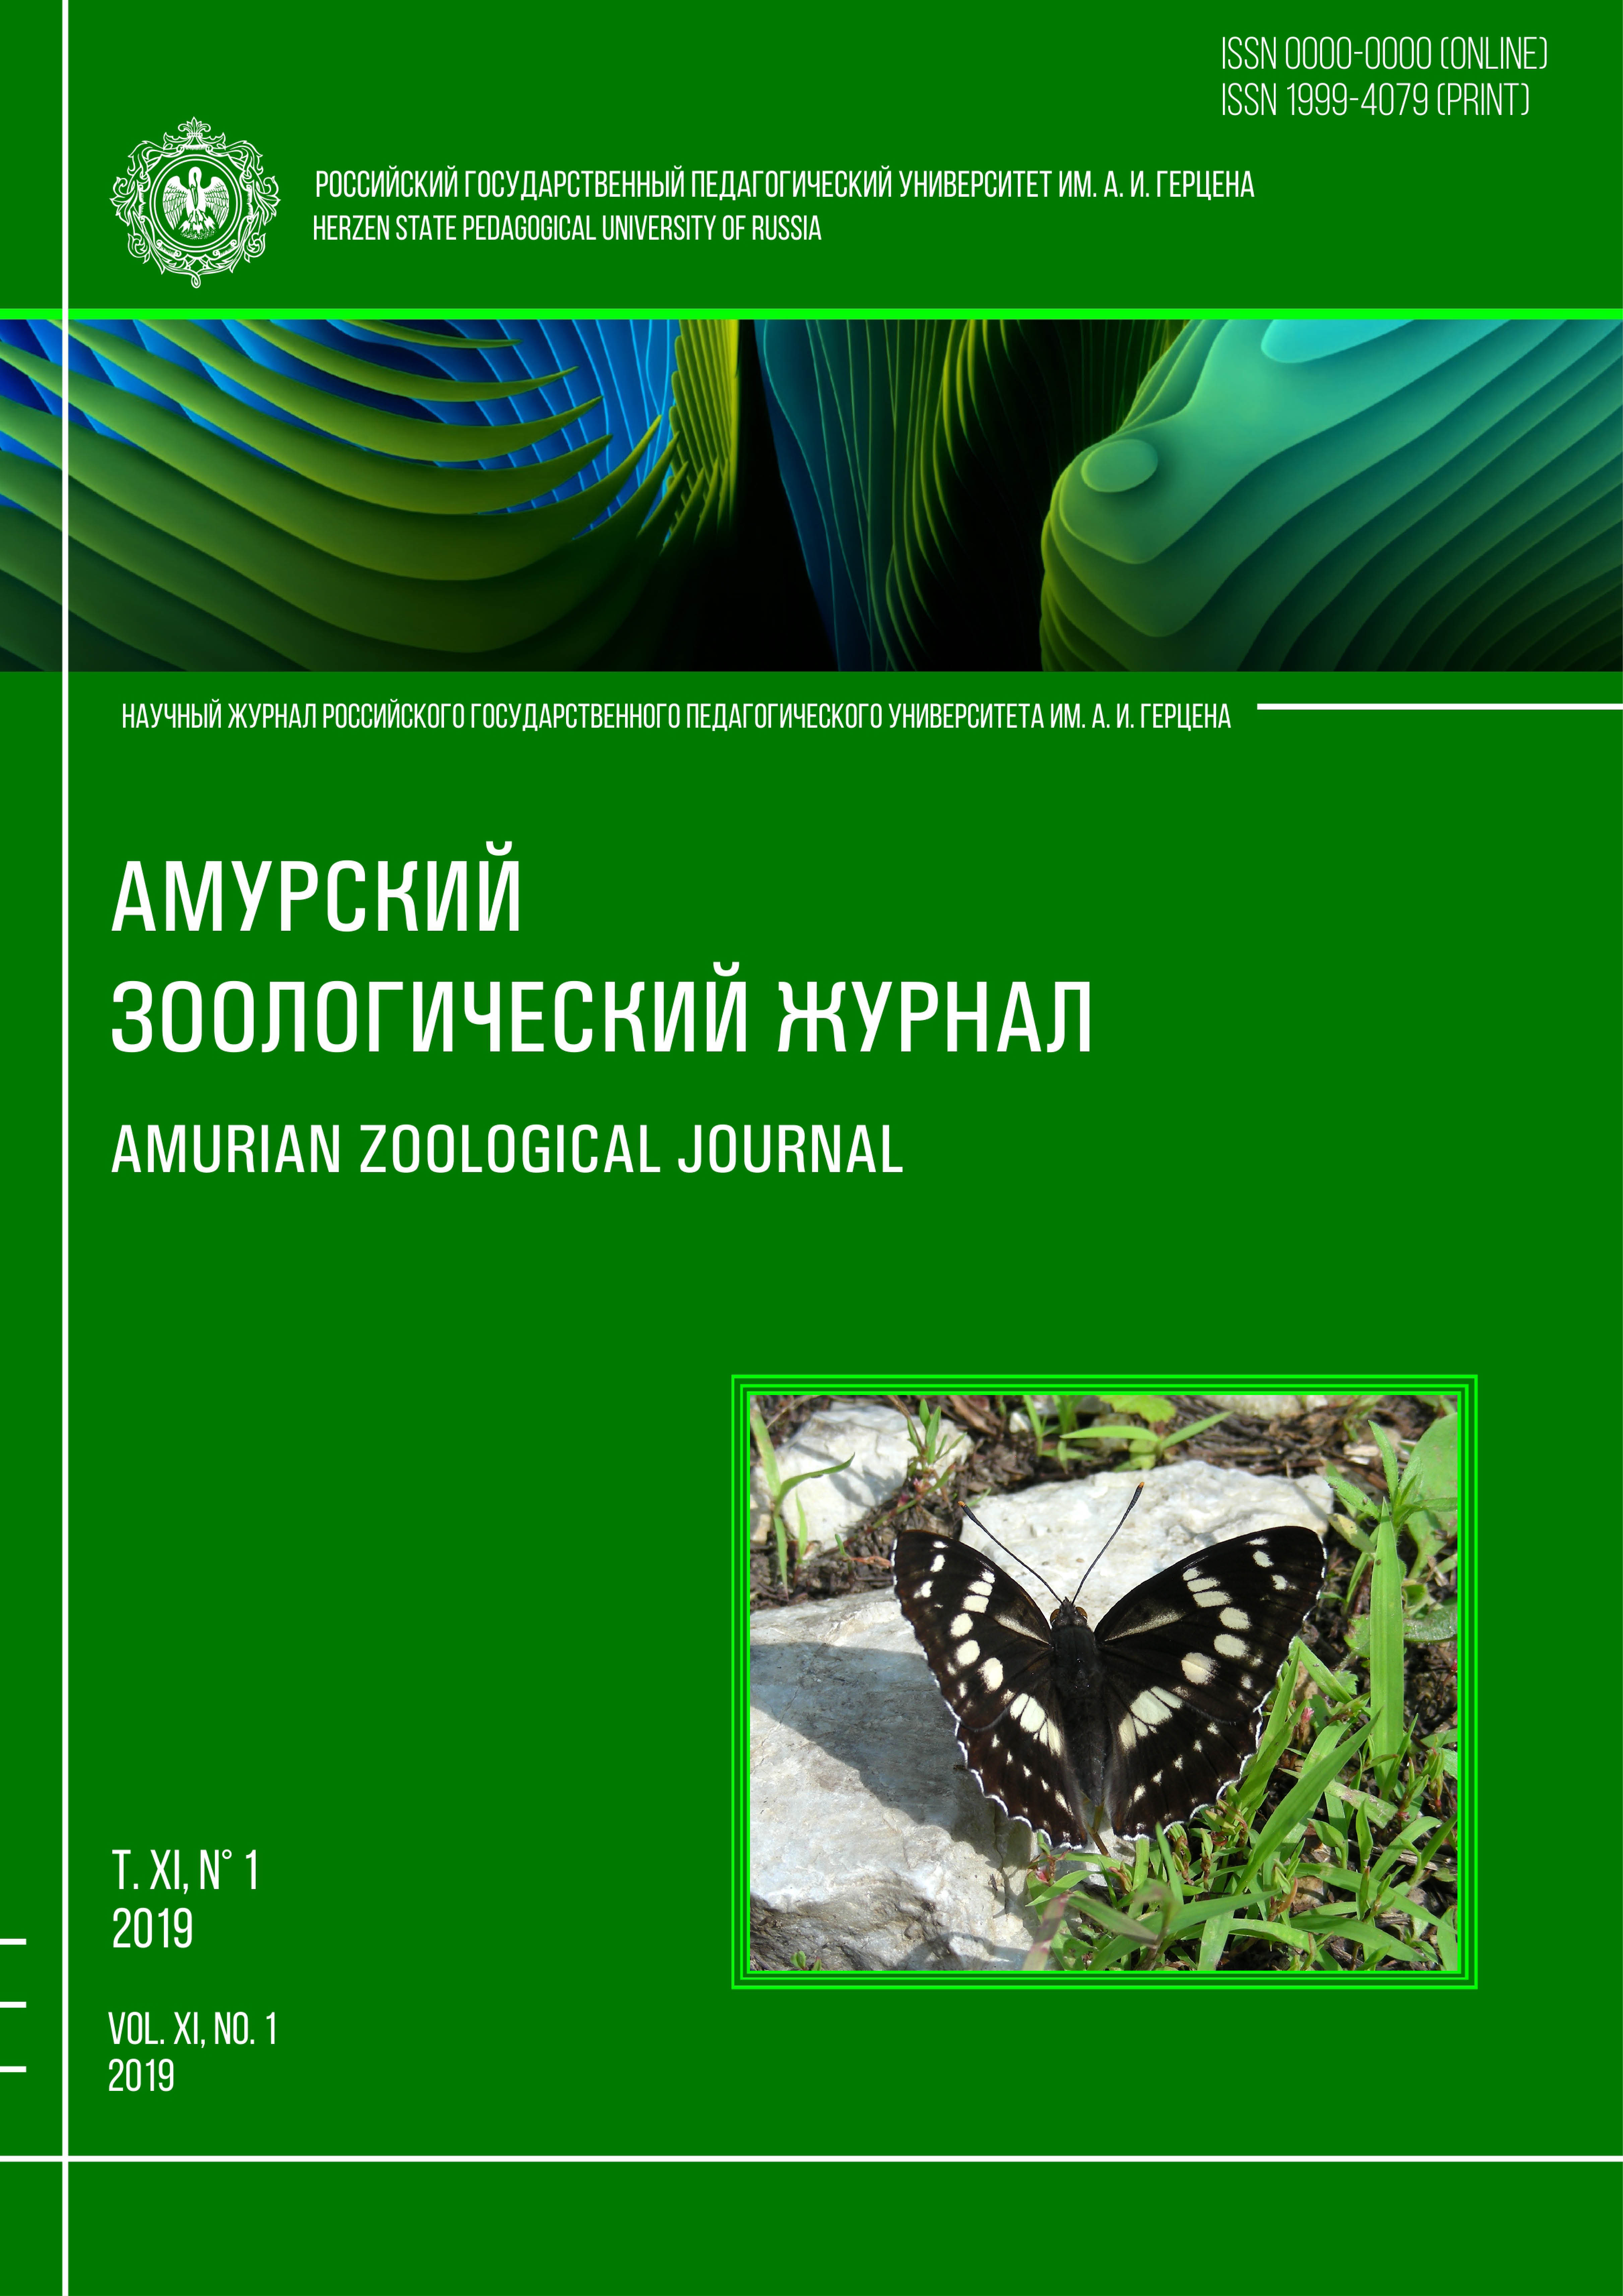 Обложка издания "Амурский зоологический журнал" (т. XI, № 1)